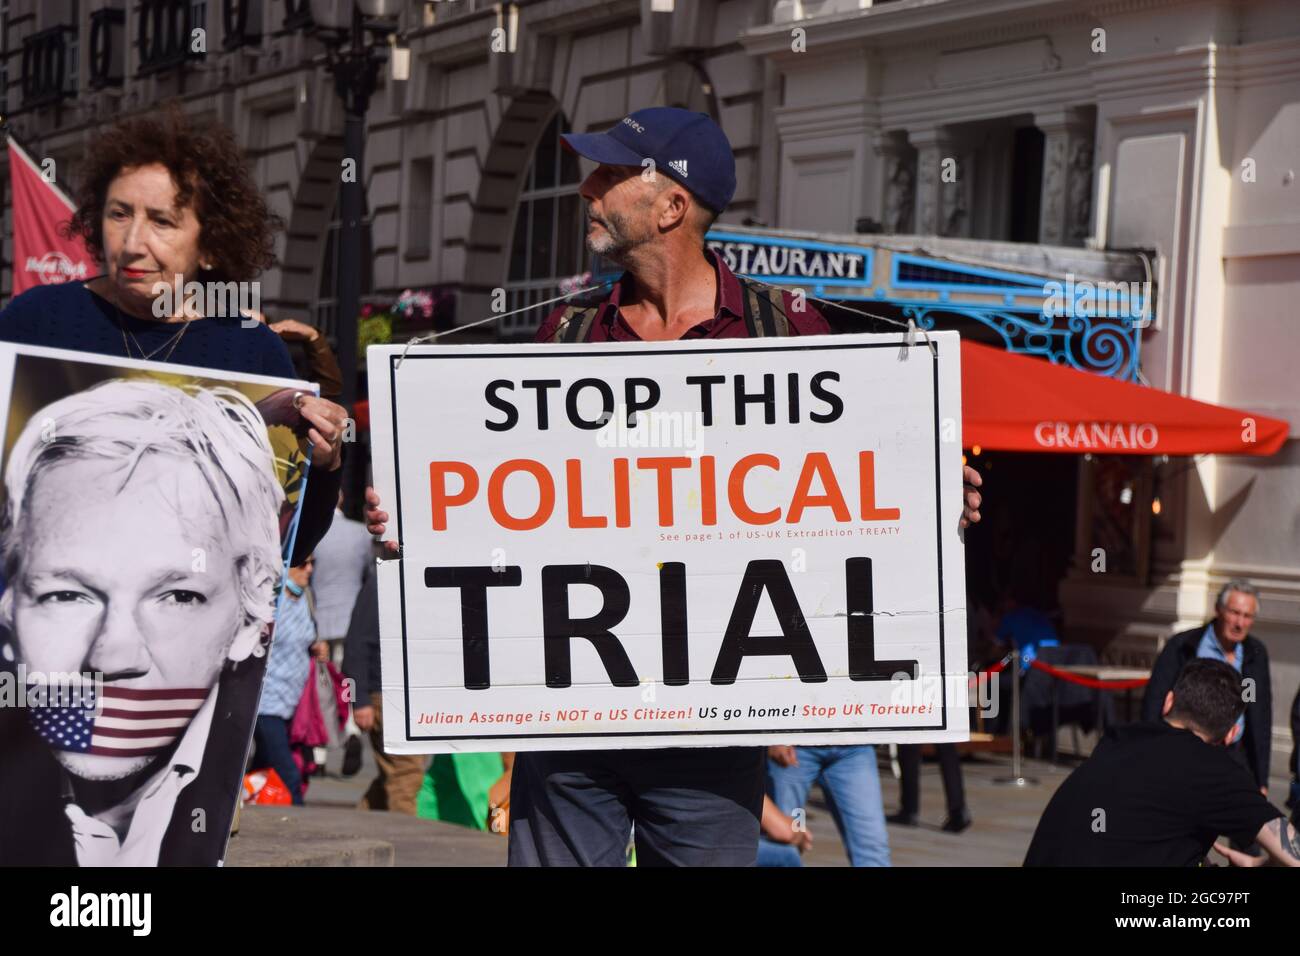 Londres, Royaume-Uni. 7 août 2021. Manifestation libre de Julian Assange à Piccadilly Circus. Les manifestants se sont rassemblés une fois de plus dans le cadre des manifestations en cours exigeant la libération du fondateur de WikiLeaks. (Crédit : Vuk Valcic / Alamy Live News) Banque D'Images